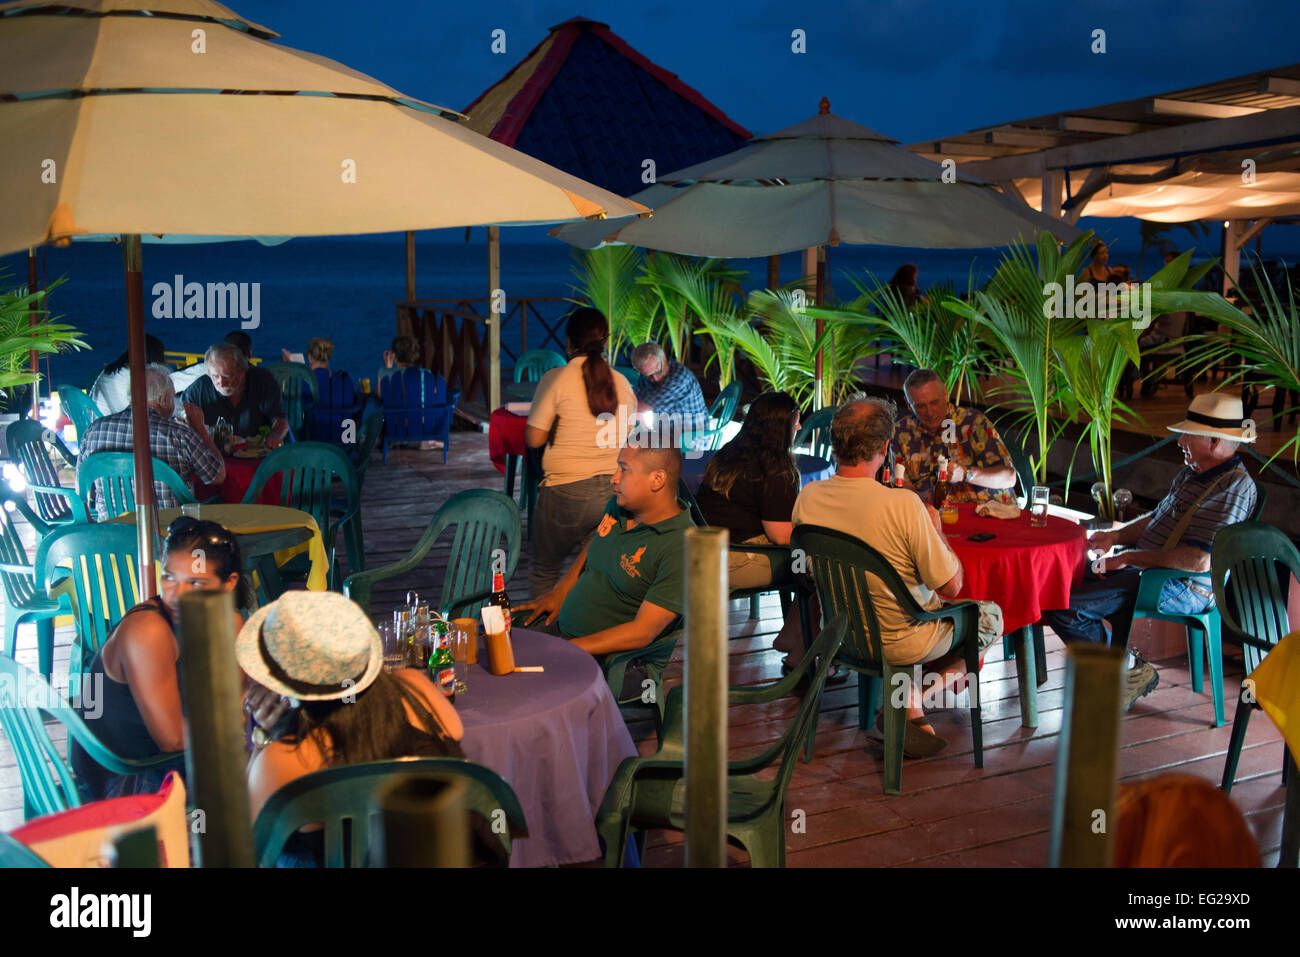 Panama, Bocas del Toro, Province de l'île l'Île de Colon (Colon), rue principale. Bocas del Toro, Panama par nuit. Restaurants et hôtel Banque D'Images